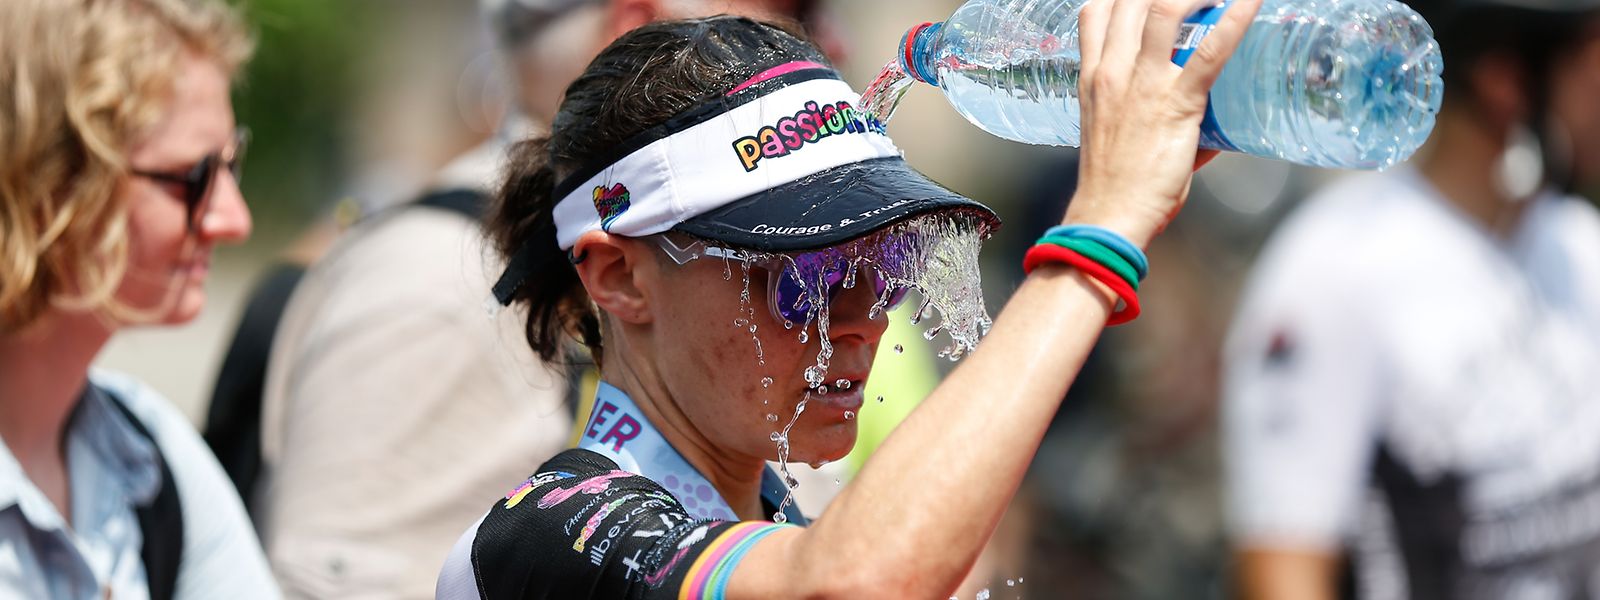 Die Teilnehmer am Ironman 70.3 in Remich mussten am 19. Juni mit Temperaturen von über 30 Grad Celsius kämpfen. Eine kleine Abkühlung war demnach willkommen.